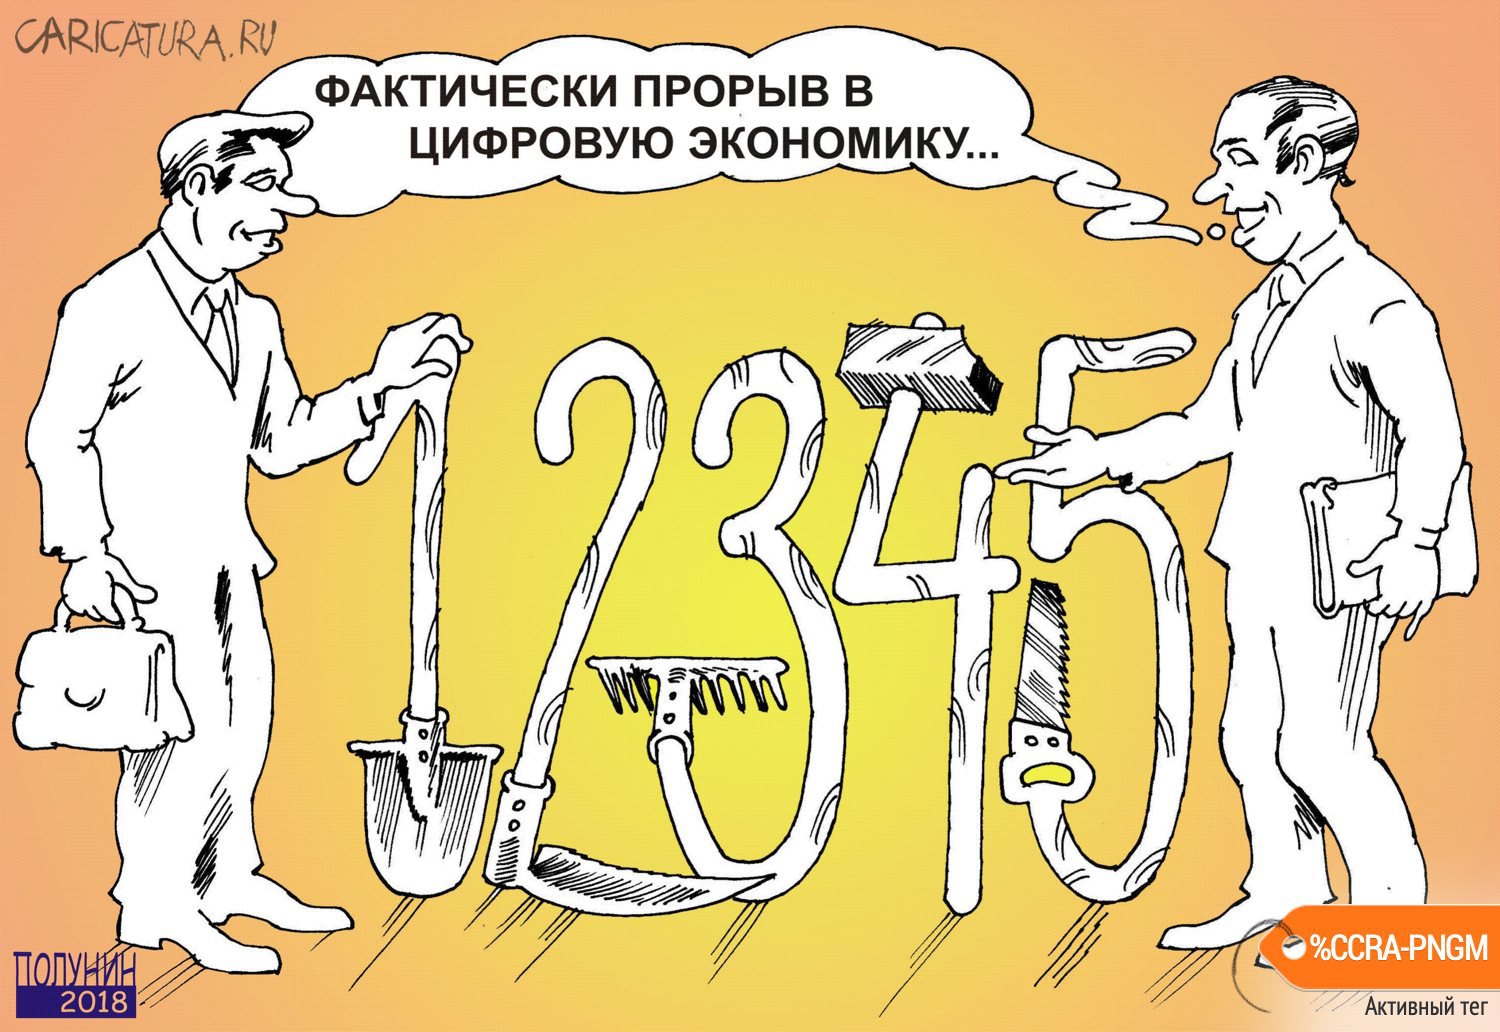 Карикатура "Цифровая экономика", Александр Полунин